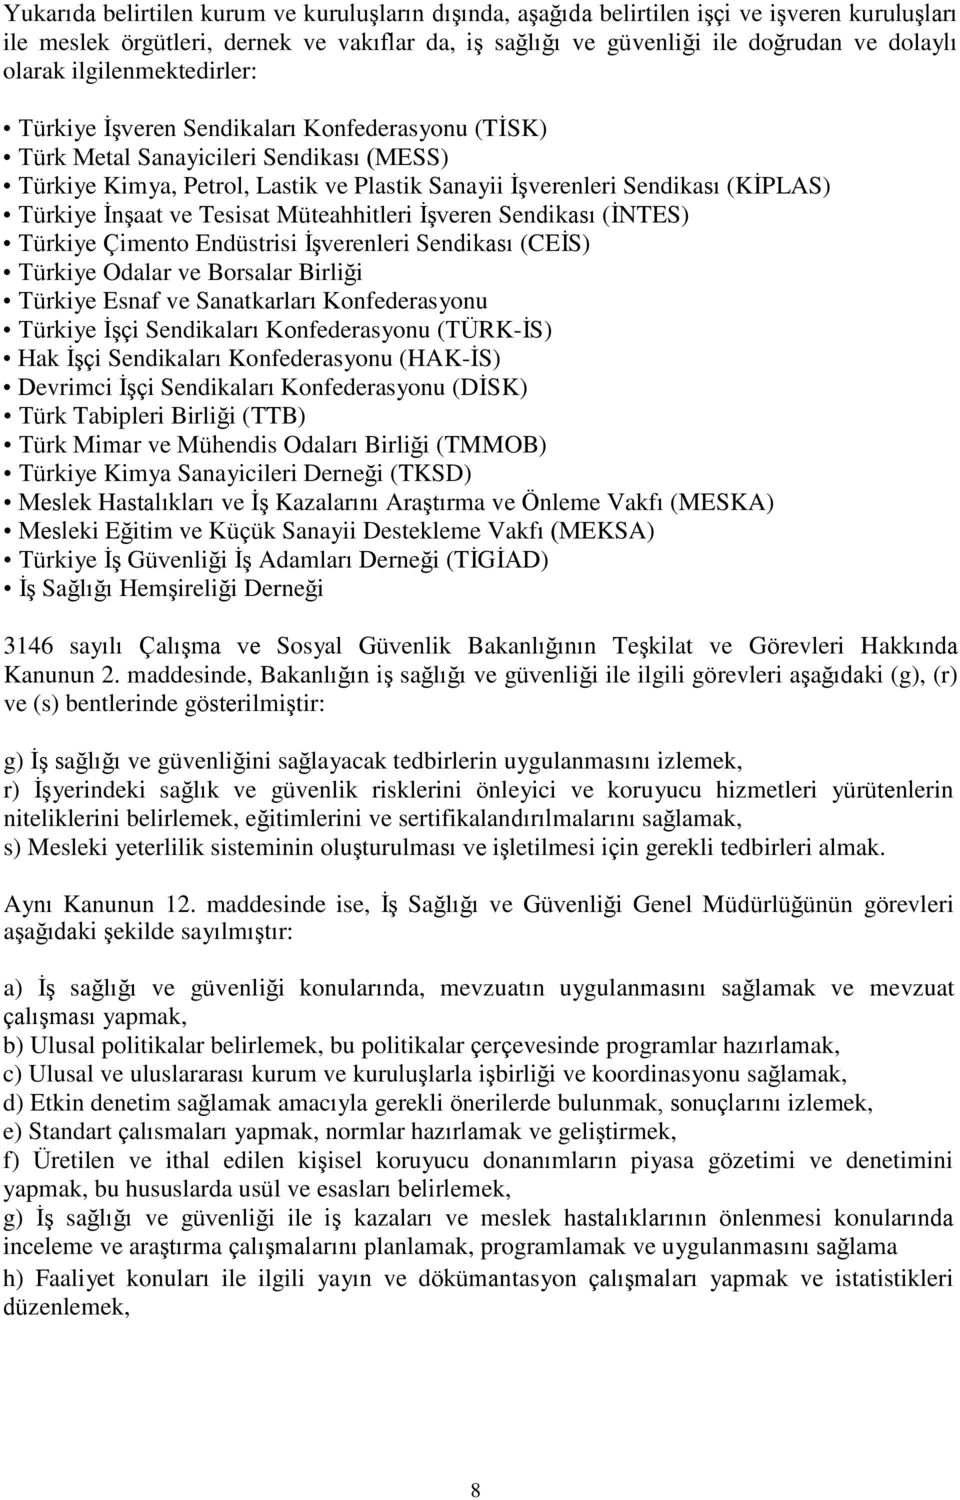 ĠnĢaat ve Tesisat Müteahhitleri ĠĢveren Sendikası (ĠNTES) Türkiye Çimento Endüstrisi ĠĢverenleri Sendikası (CEĠS) Türkiye Odalar ve Borsalar Birliği Türkiye Esnaf ve Sanatkarları Konfederasyonu